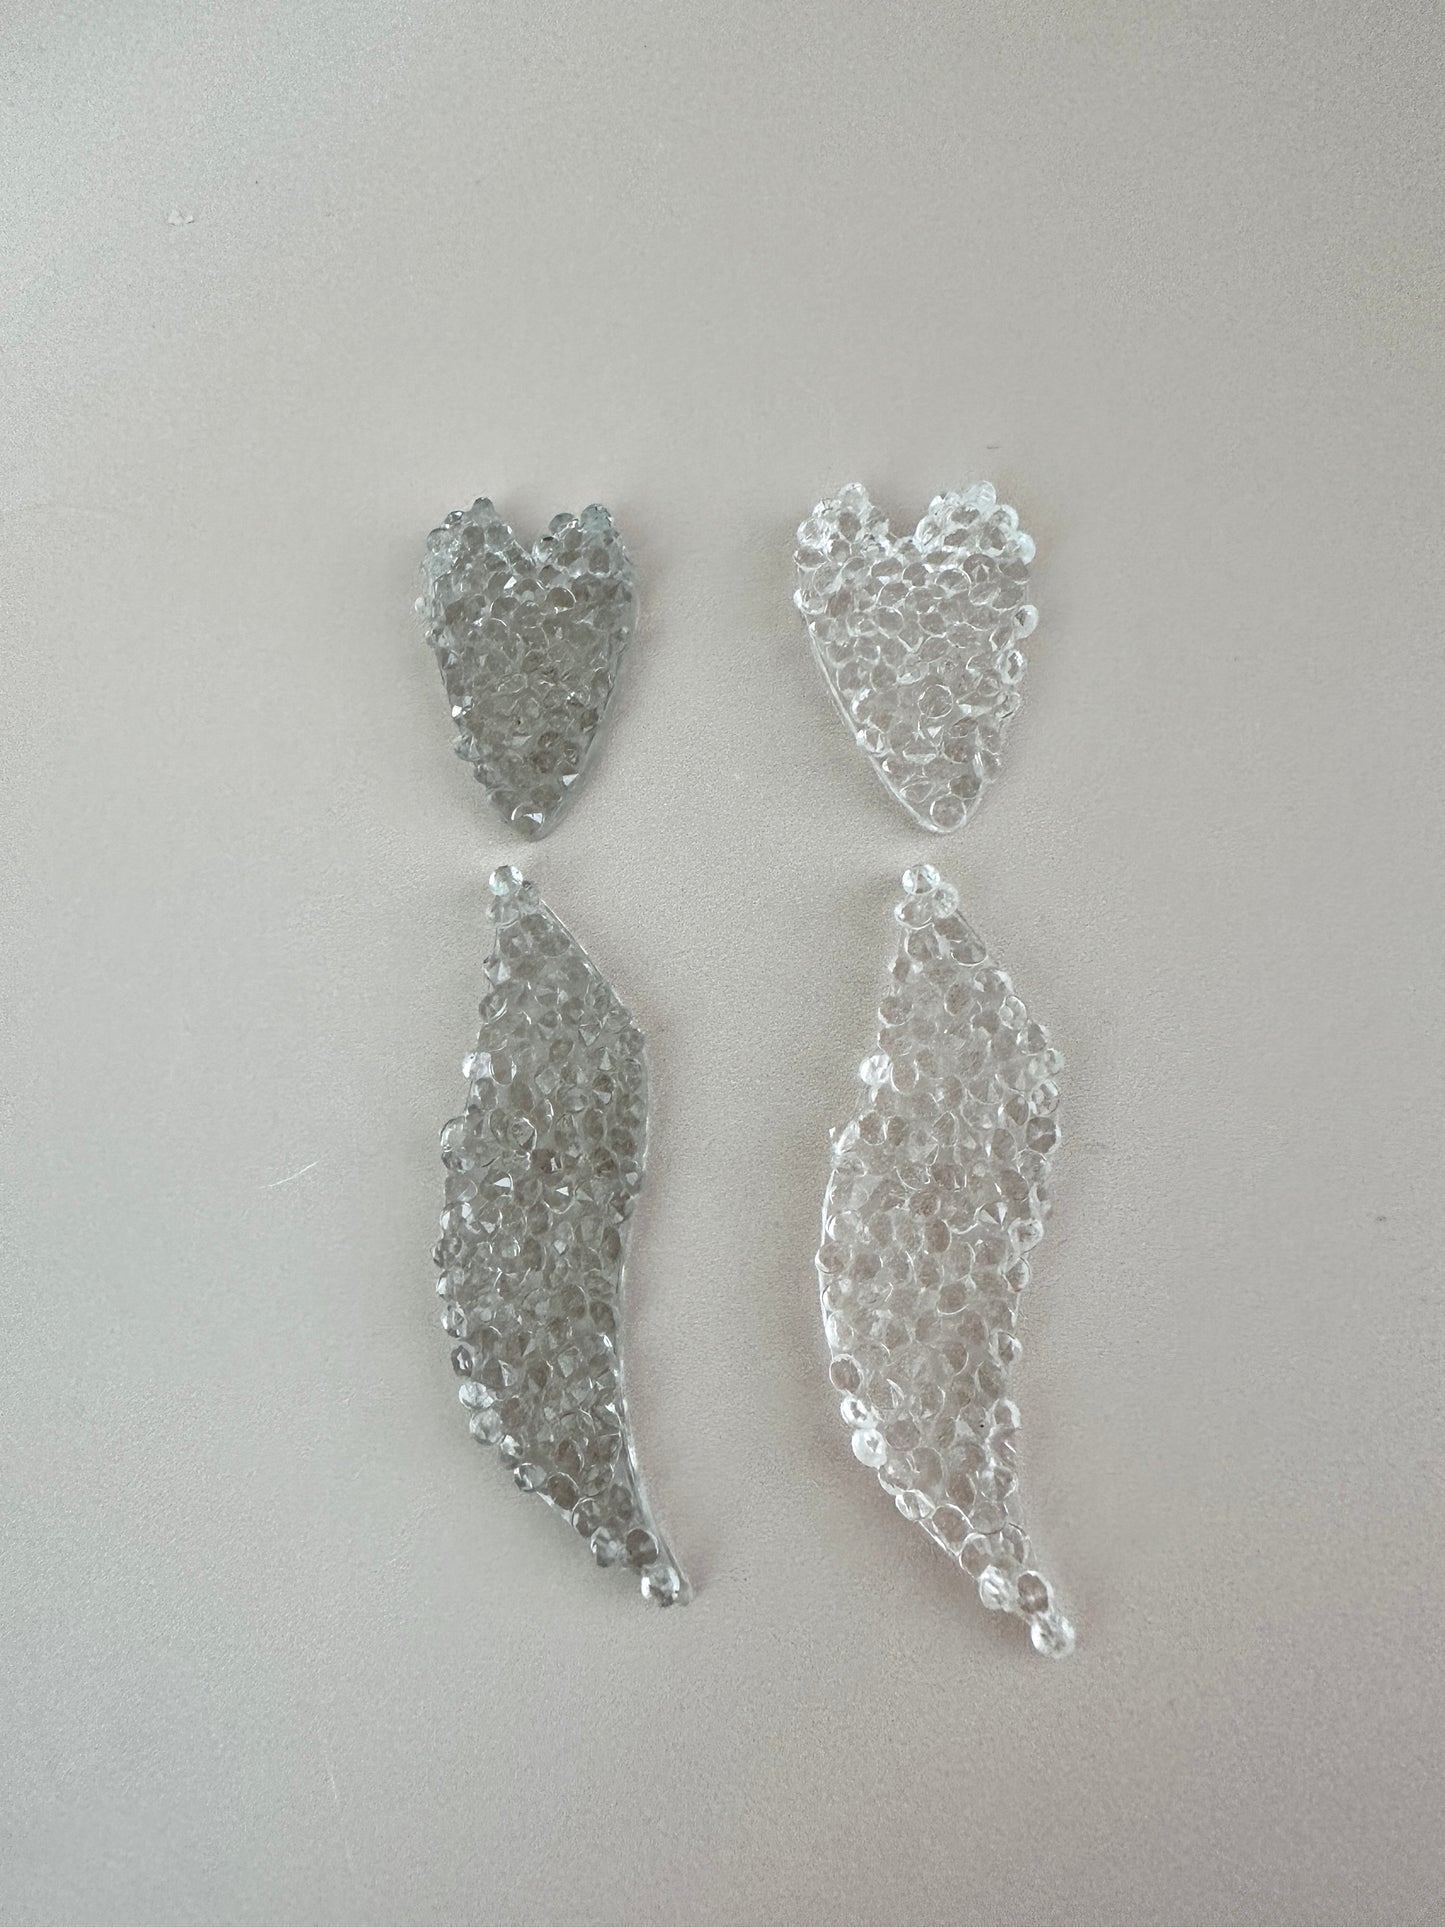 Silikonform Kristallformen in Form von Blättern und Herzen zur Herstellung von Schmuck, Schlüsselanhängern und Anhängern